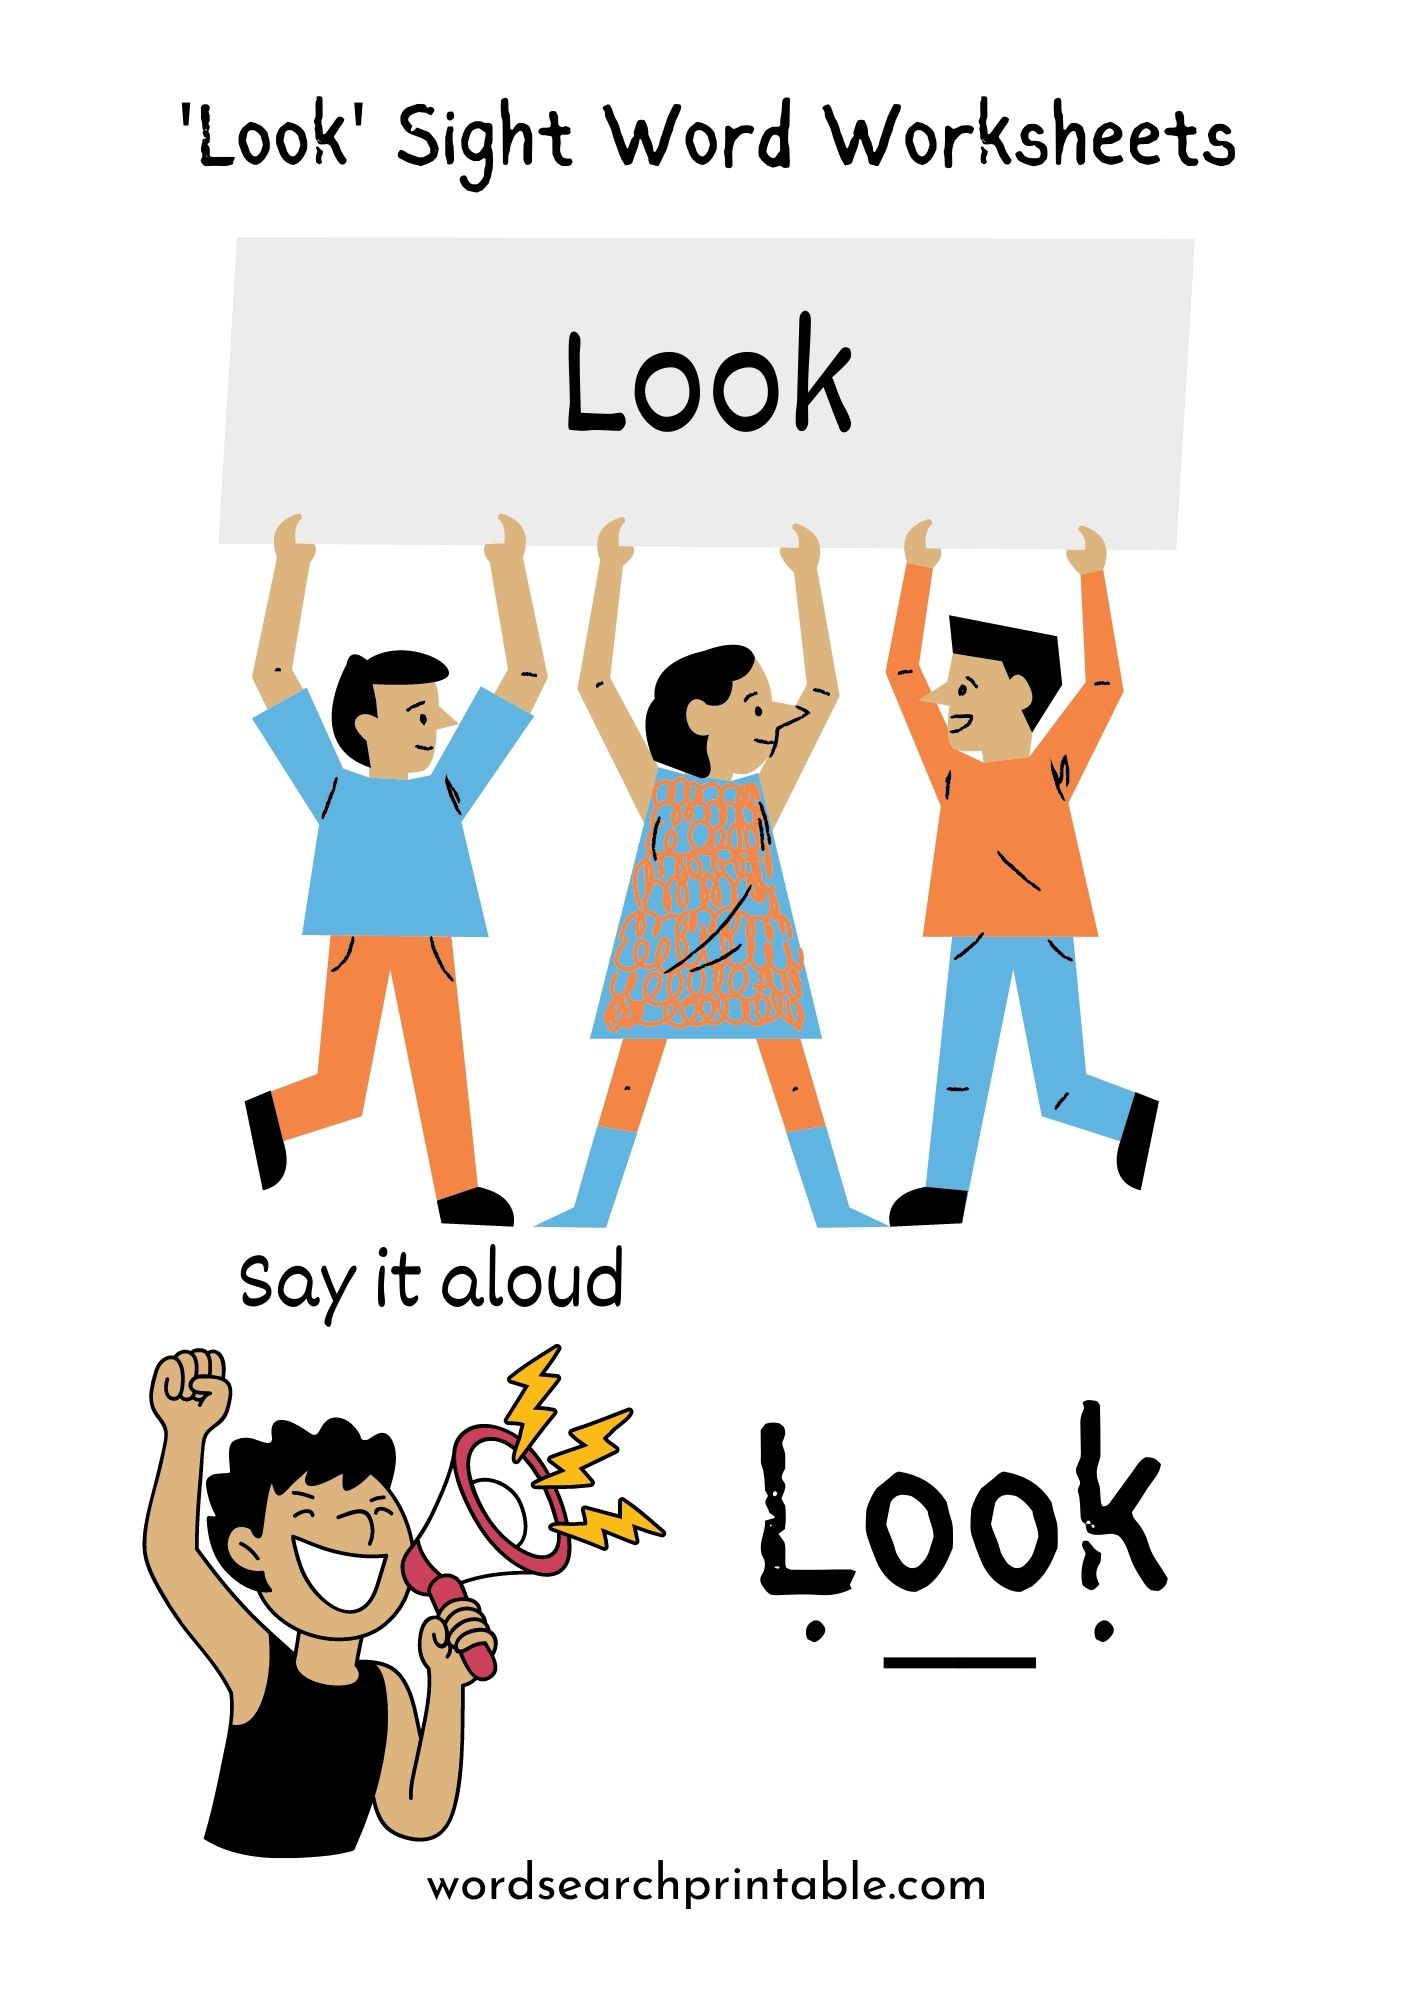 Look Sight Word Worksheet Free – Sight Word Look Worksheet PDF Download